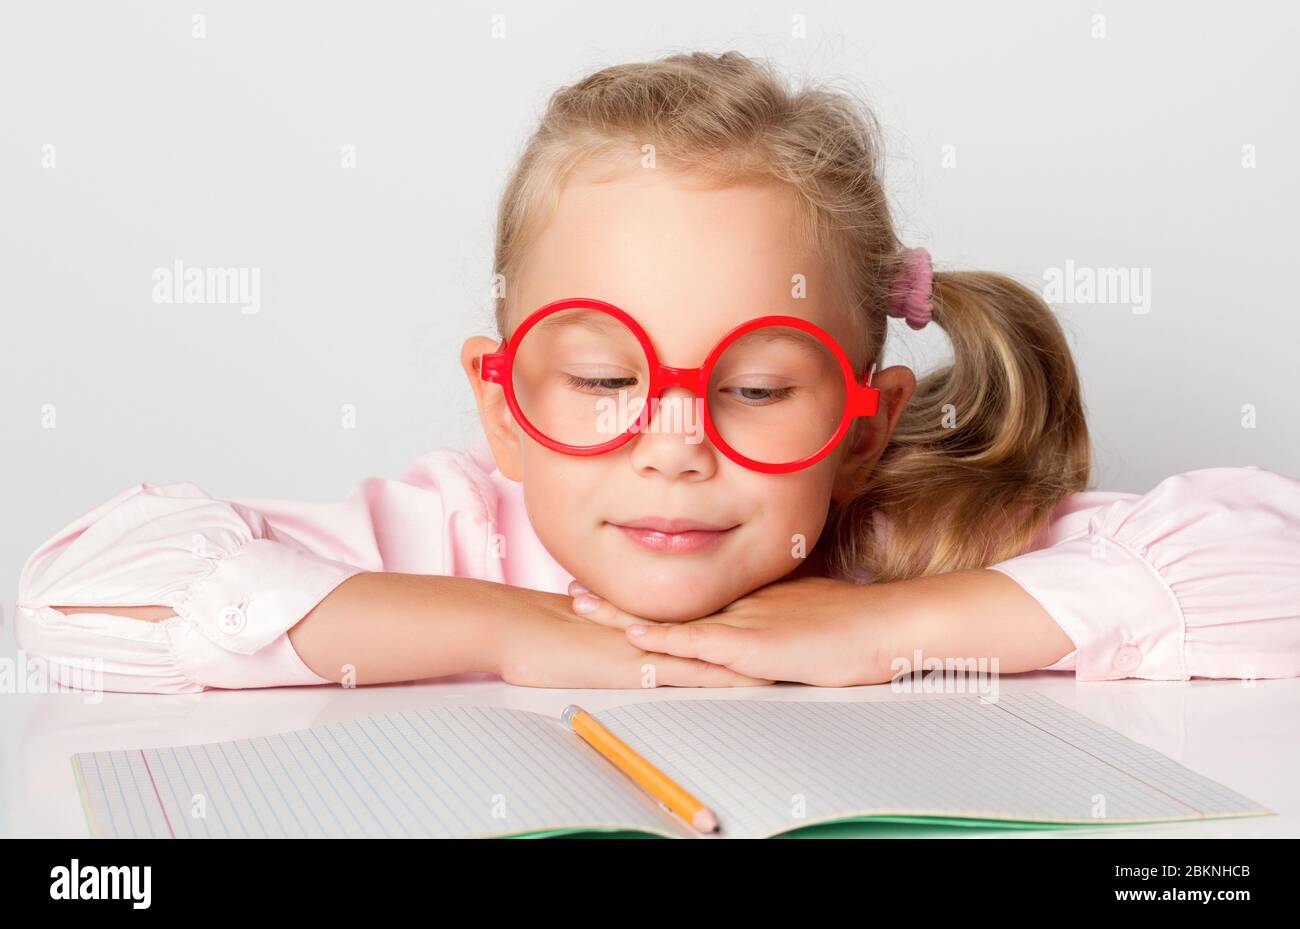 Bionda in occhiali rossi incorniciati, blusa rosa. Sorridente, appoggiato su una tavola con copybook e matita su di esso. Posa isolata su bianco Foto Stock